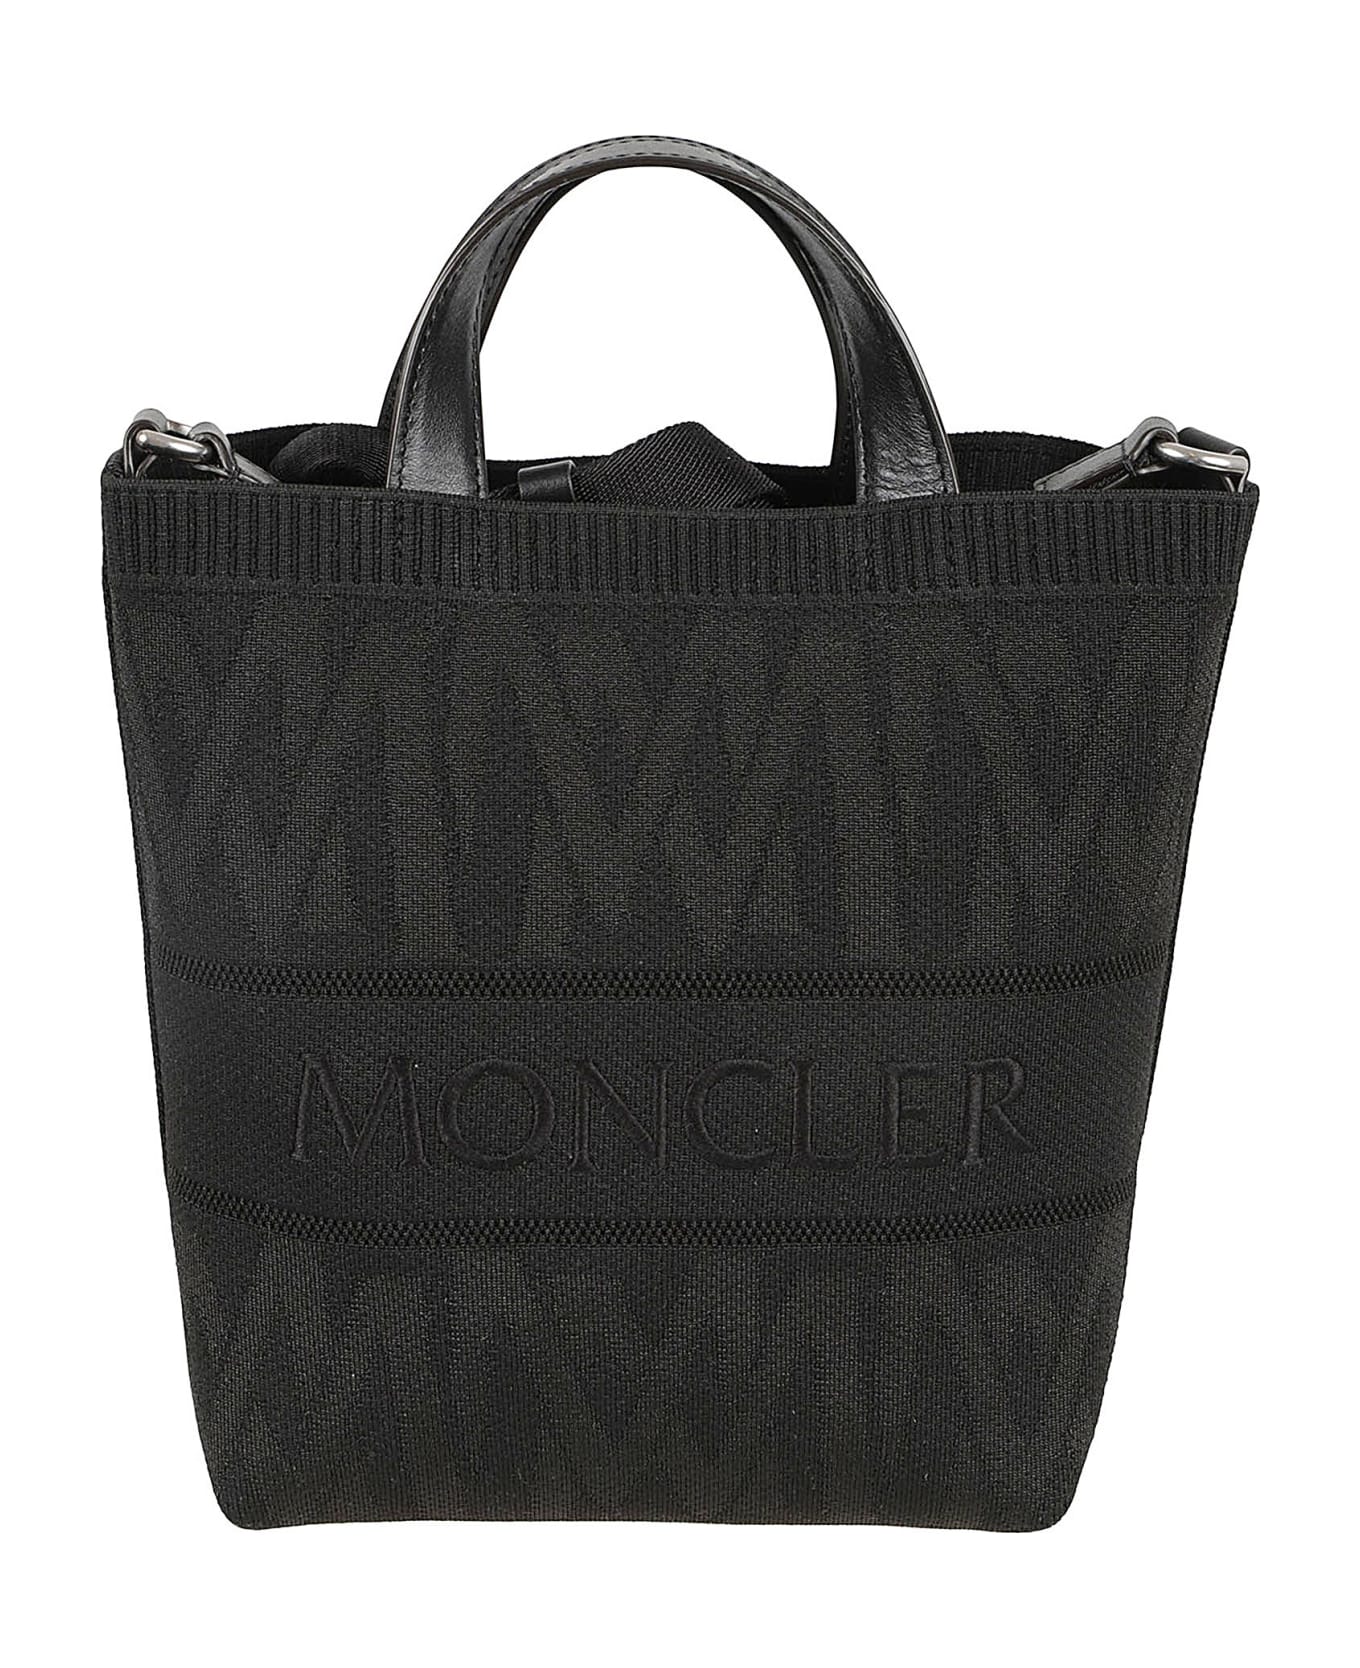 Moncler Mini Knit Tote - Black